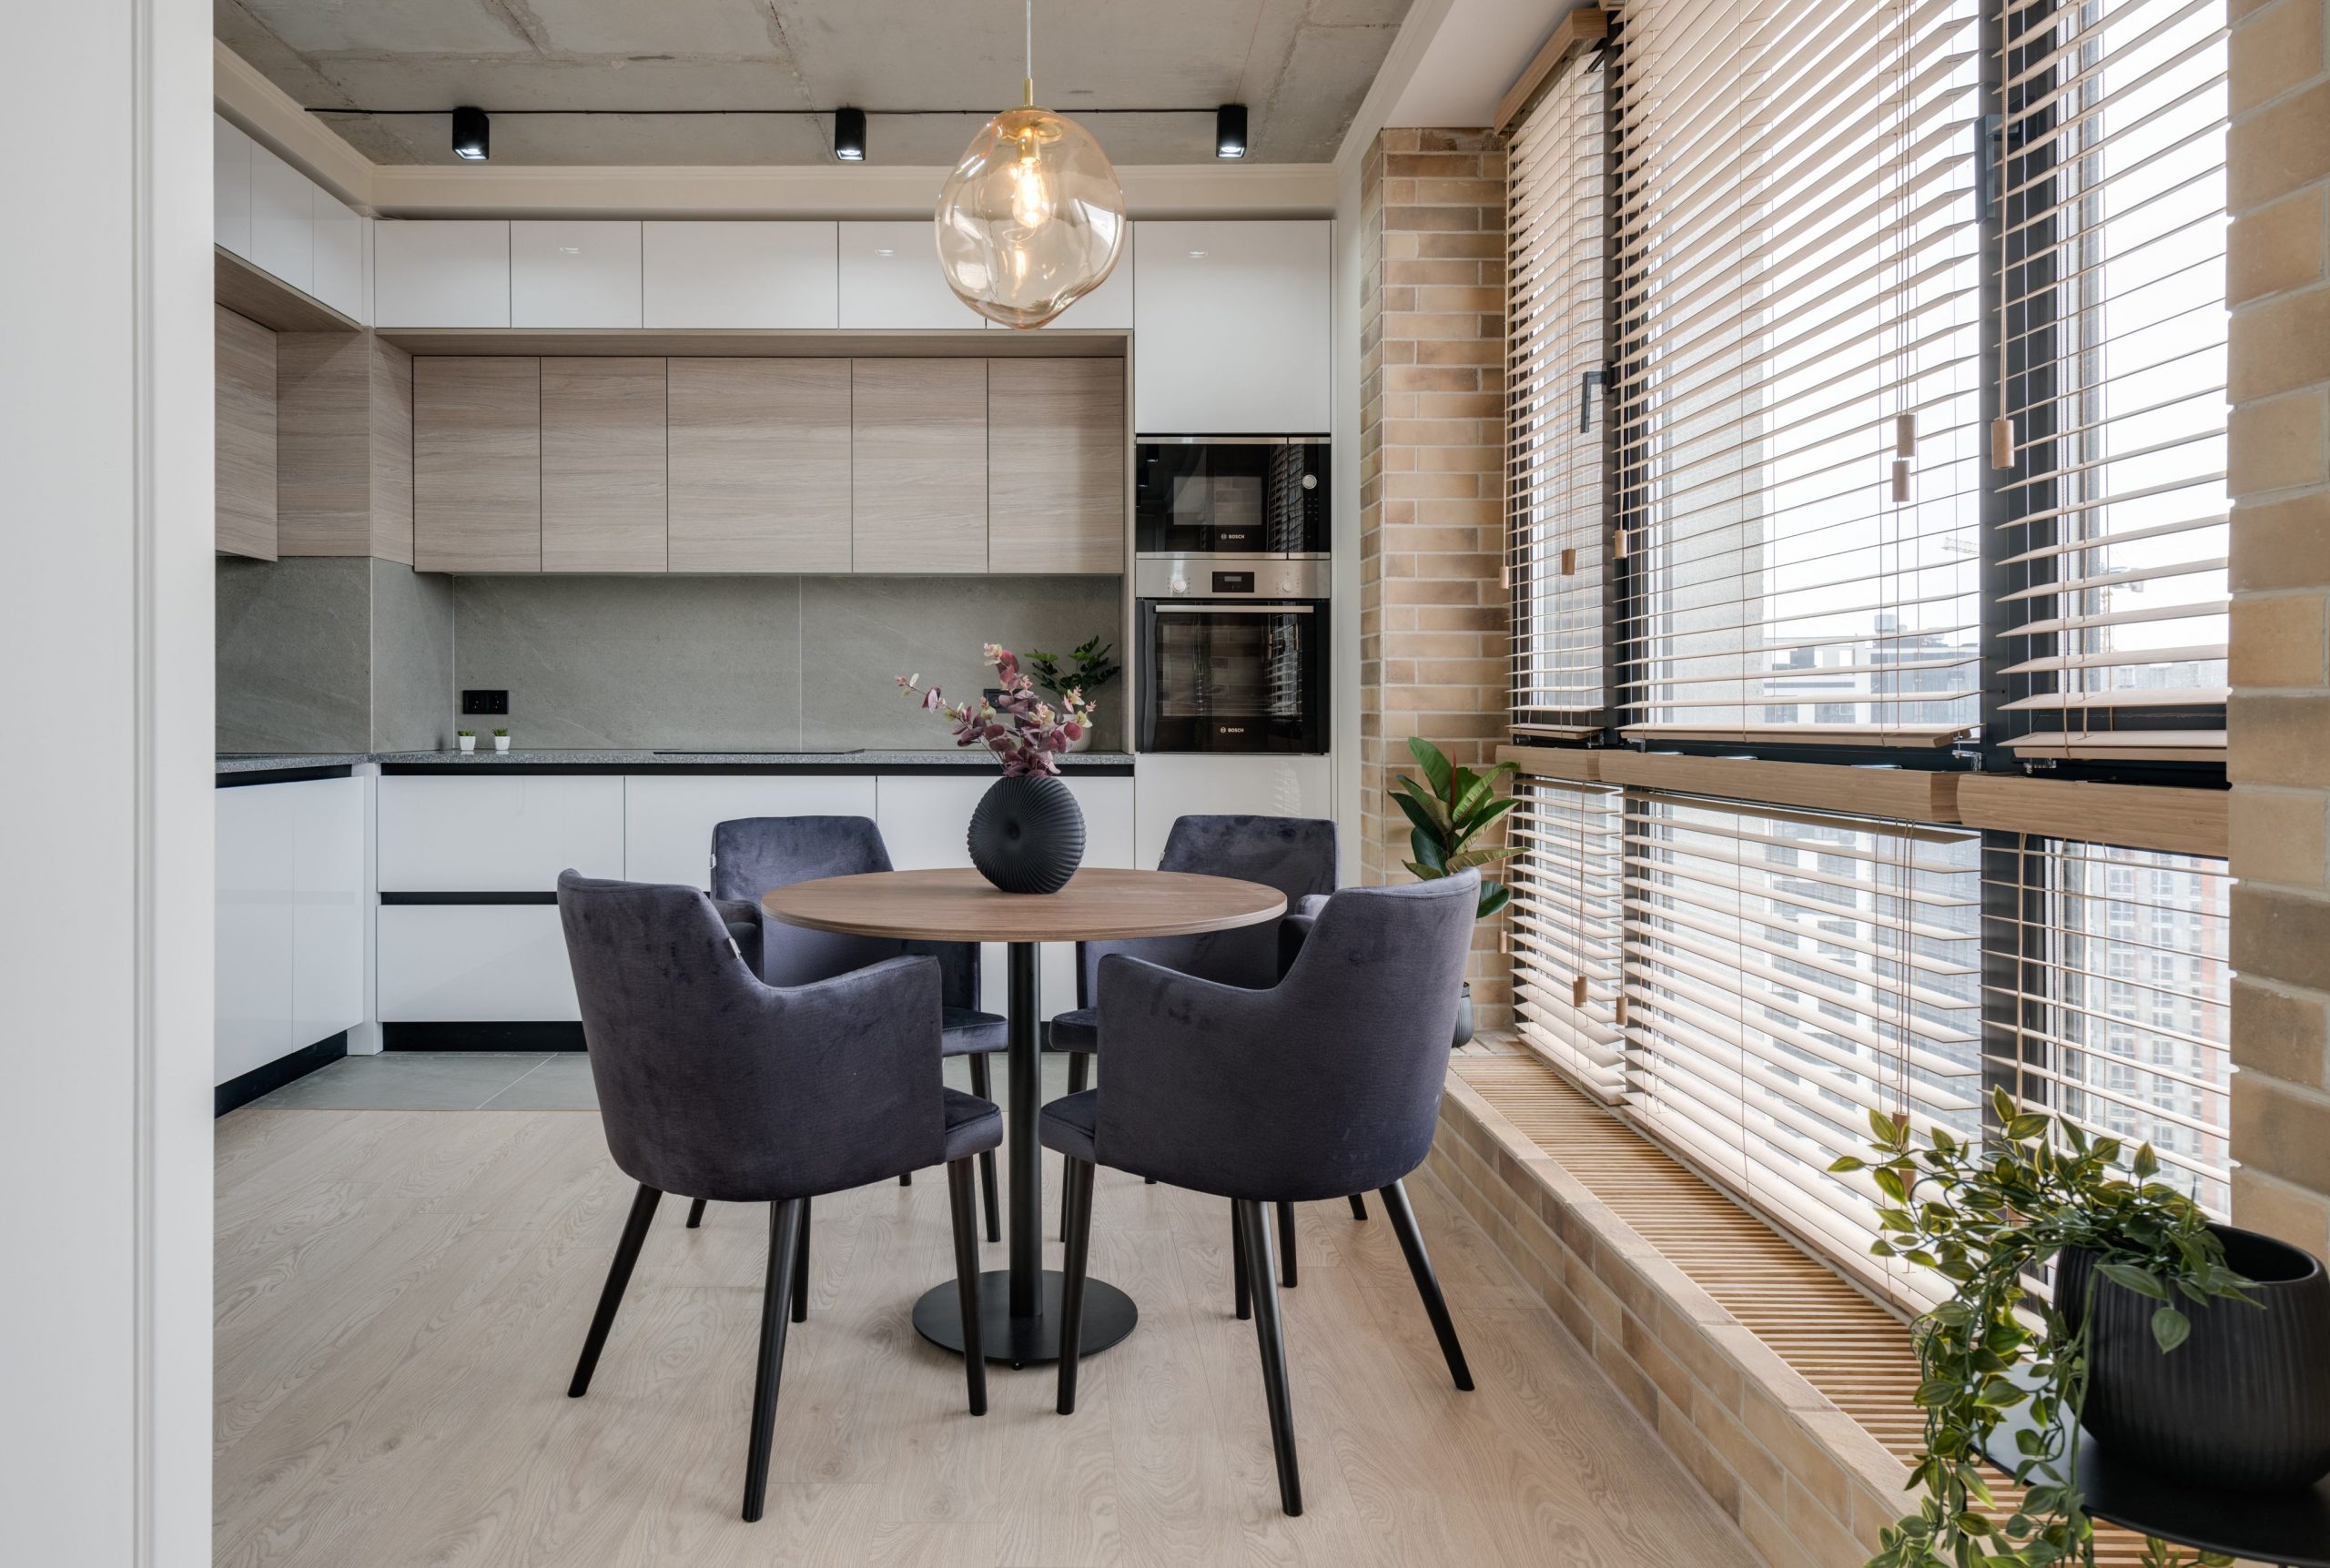 Persianas monterrey; modelo horizontal de PVC colocado en ventanales que van del techo al piso que permiten iluminar cocina integral y ante-comedor de departamento moderno.